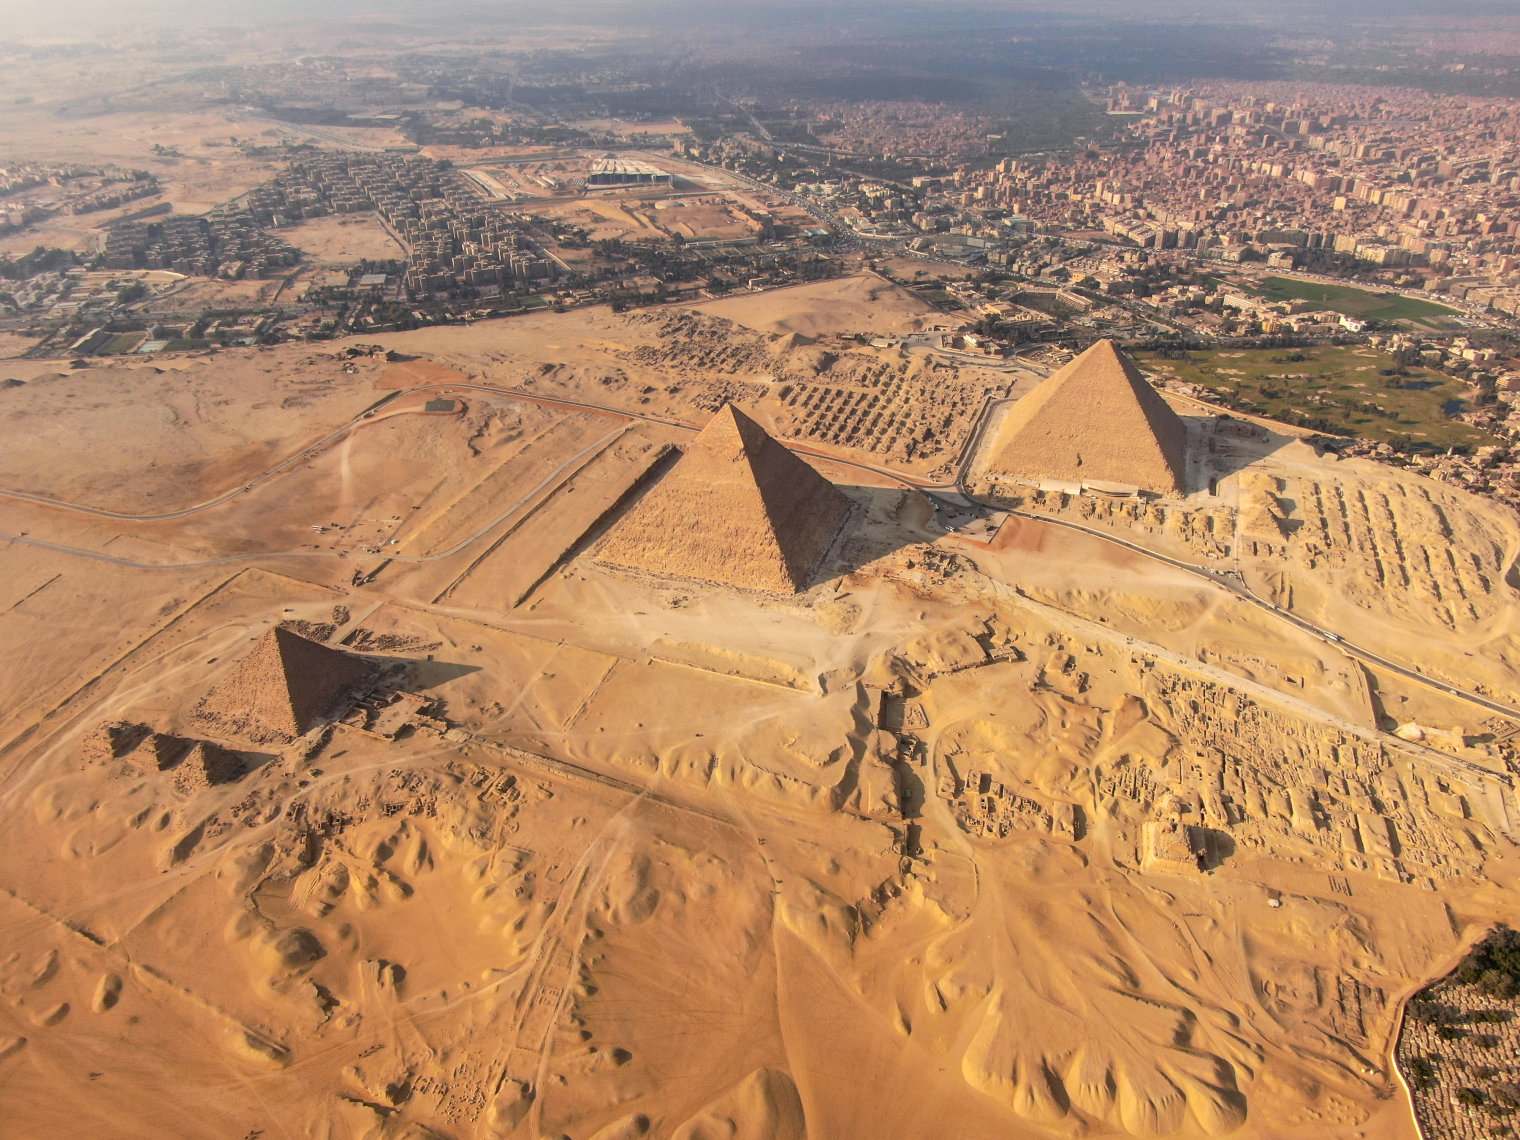 Vim li cas cov pyramids loj tshaj plaws hauv ntiaj teb khaws cia zais cia? 2